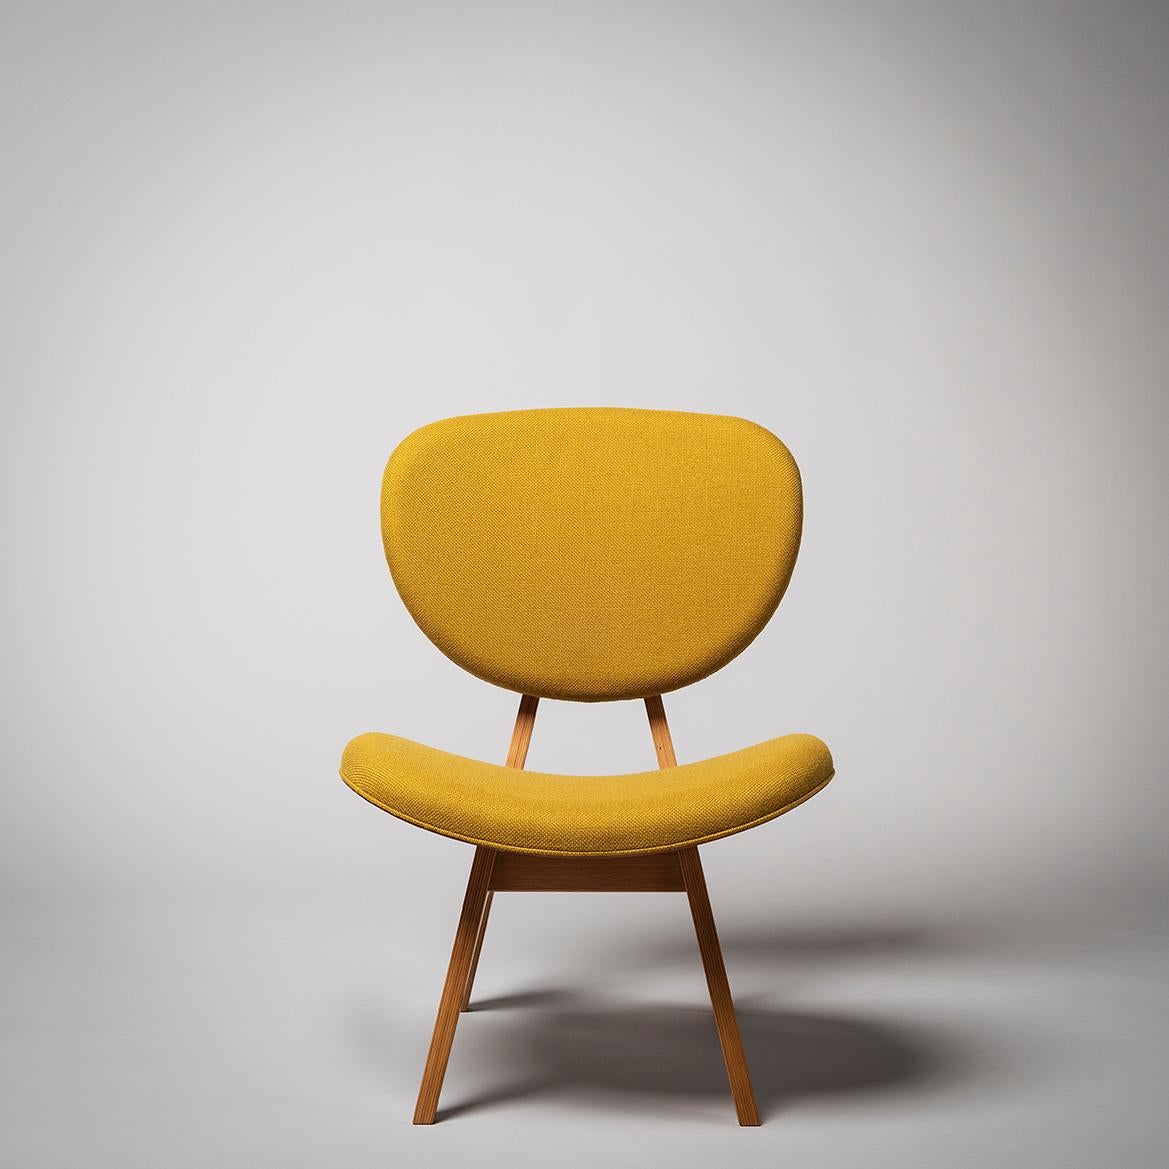 La chaise Chuza Isu a été conçue par Daisaku Cho alors qu'il était étudiant au Junzo Sakakura Architect & Associates dans les années 1960.

Le contraste entre les pieds droits et le design du dossier et de l'assise qui dessine une courbe organique